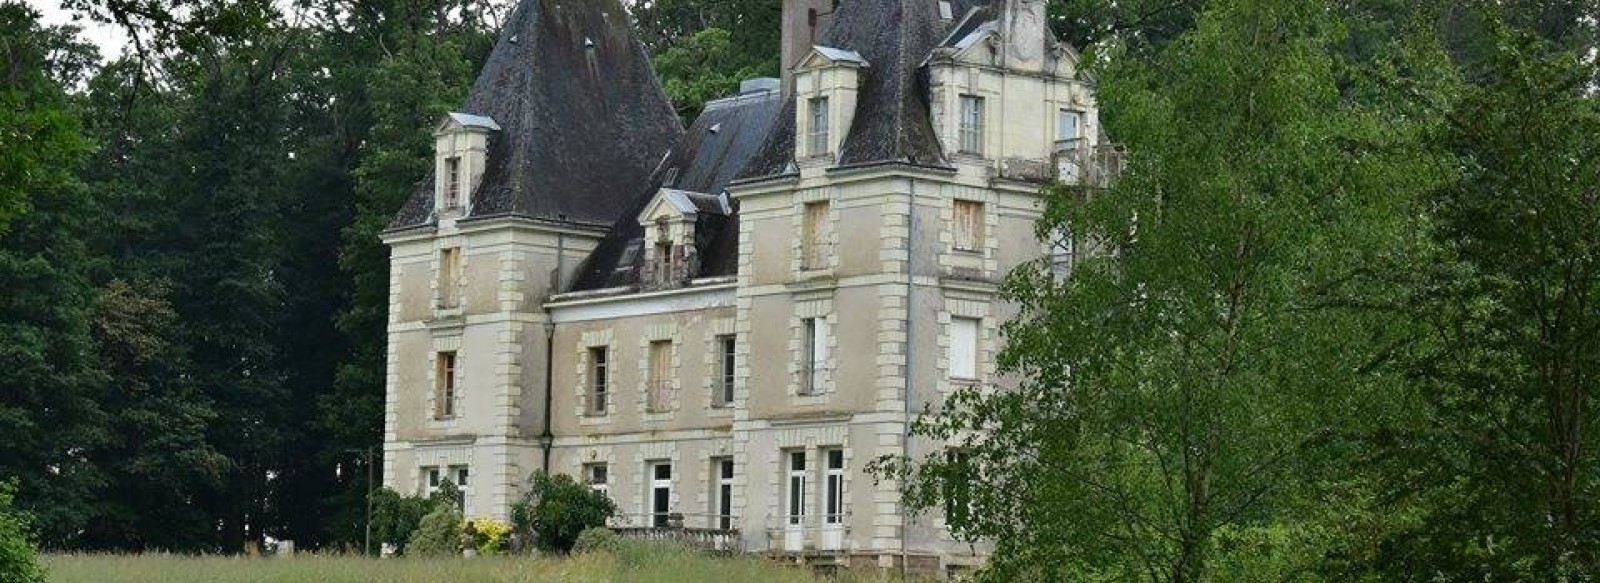 Le chateau de Noirbreuil